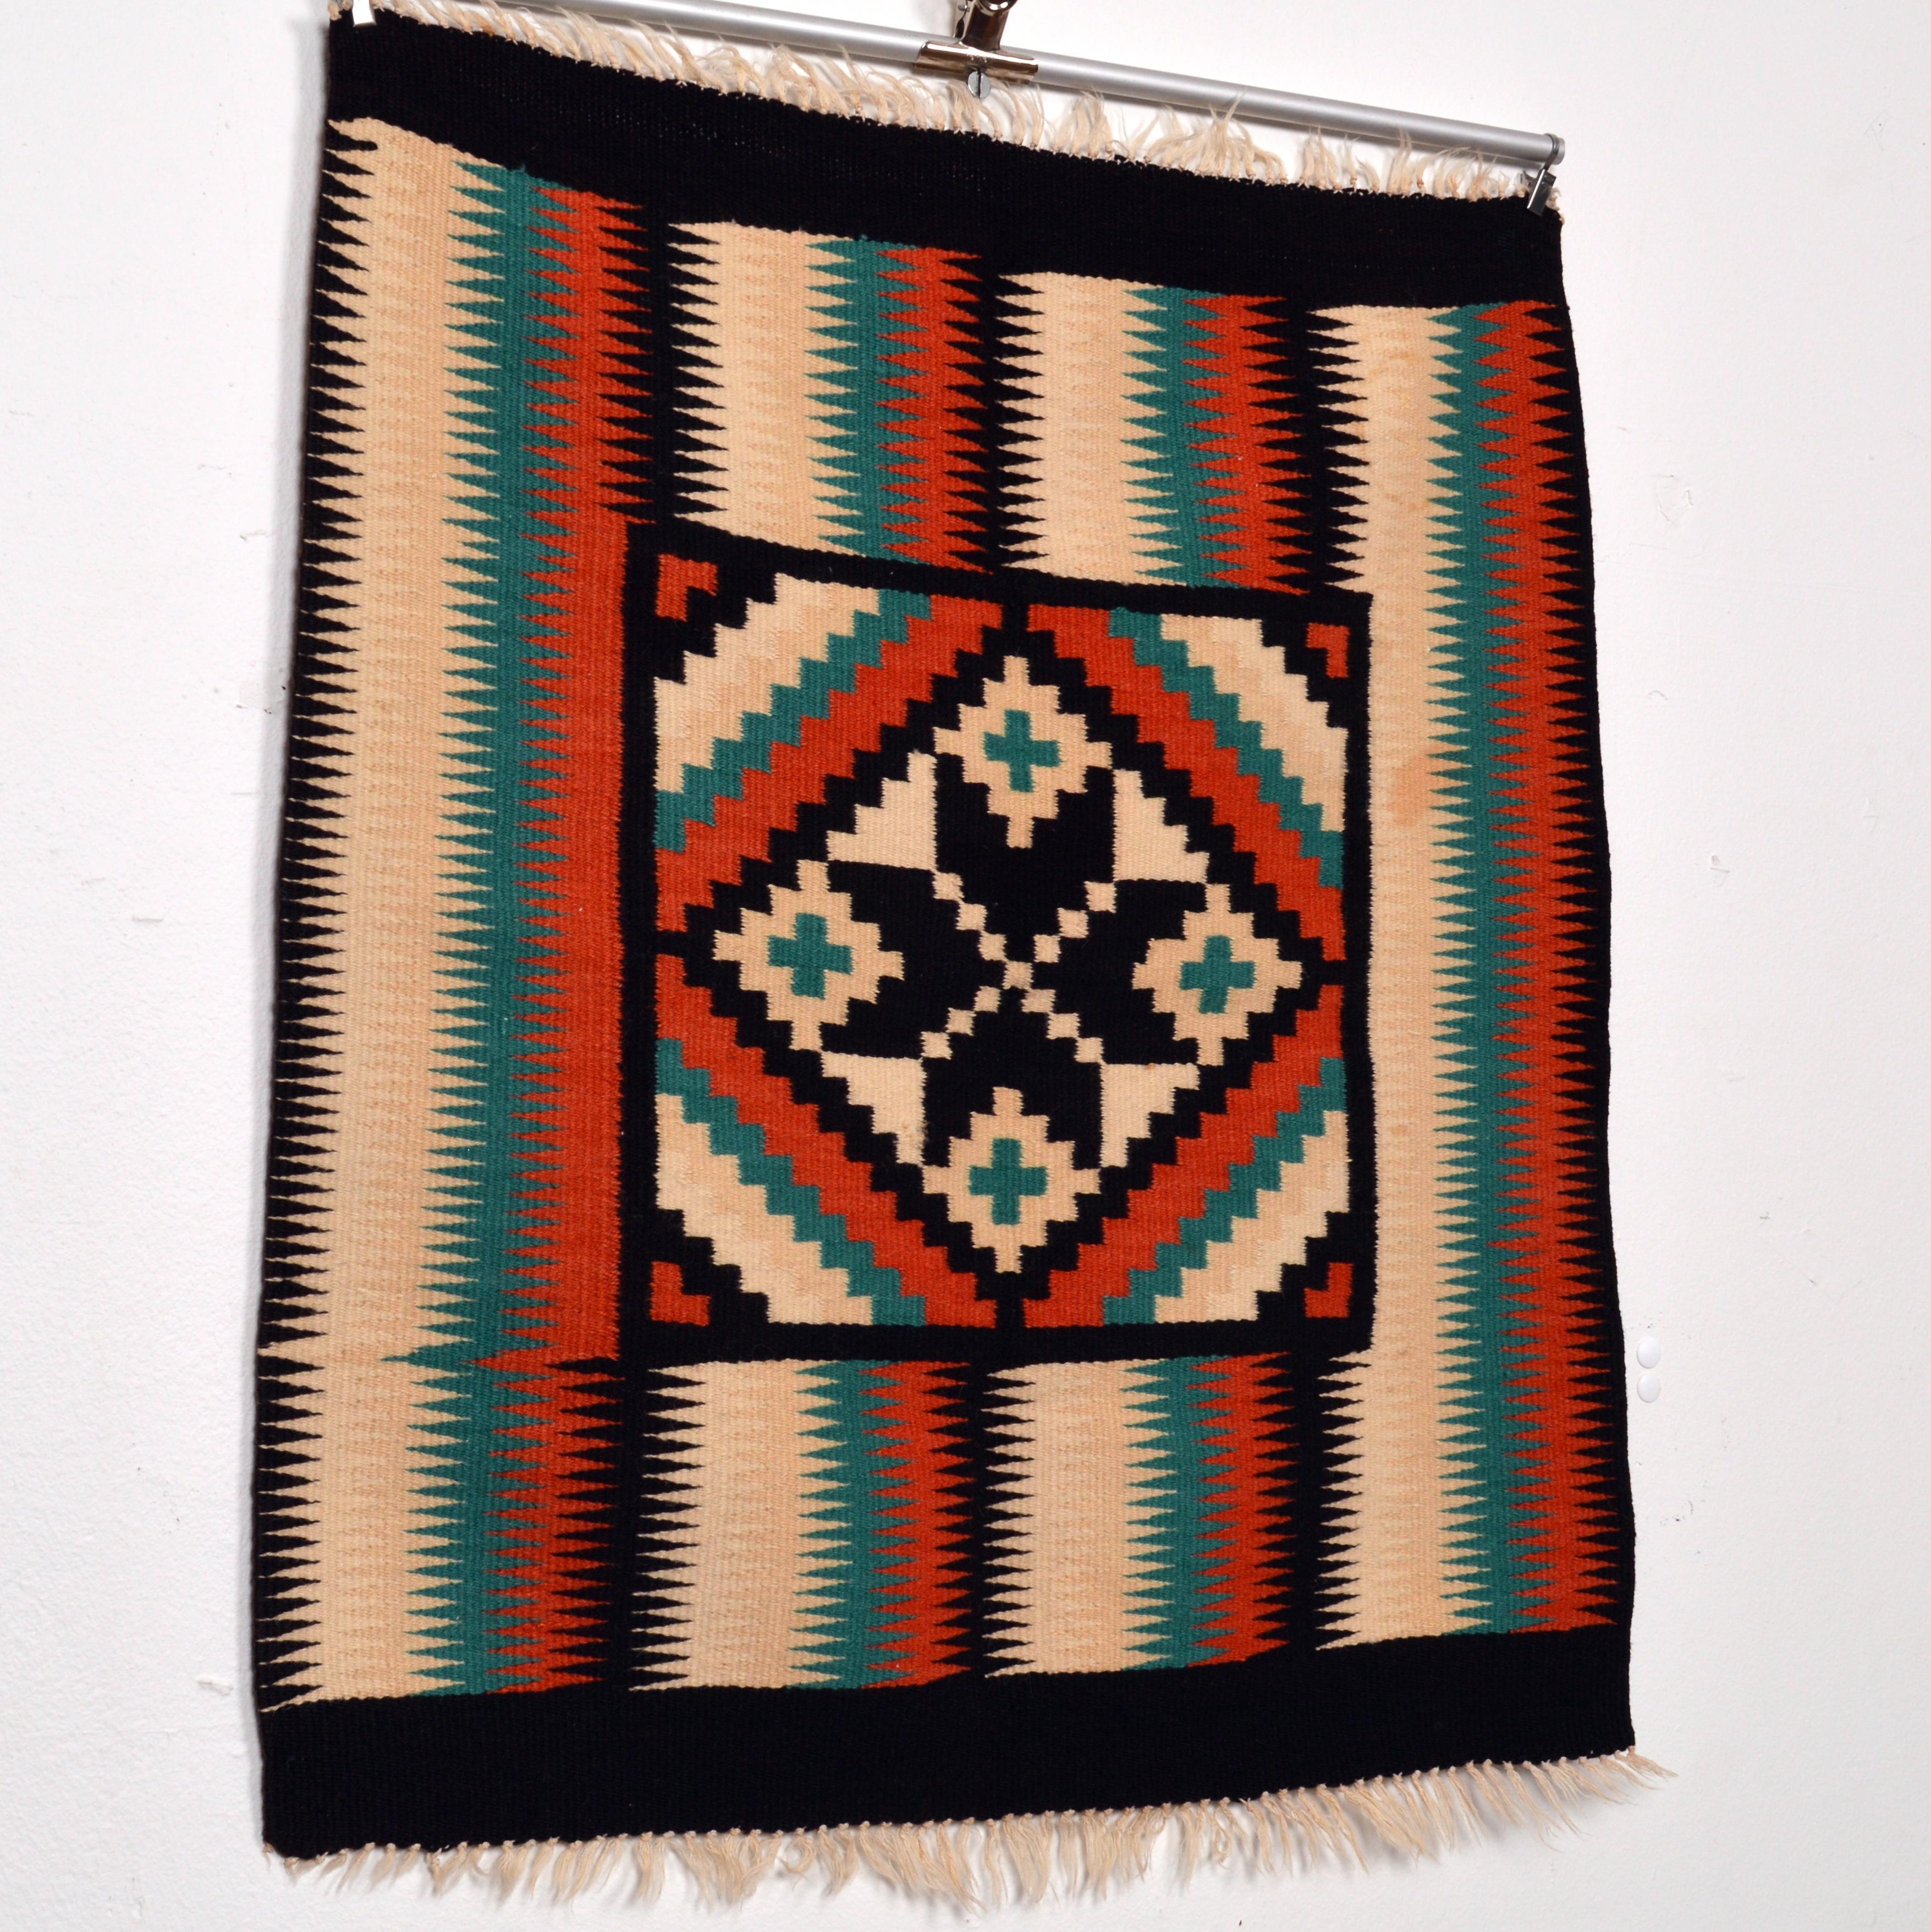 Schöner kleiner Wandteppich / Wandbehang oder Tischdekoration mit einem geometrischen Navajo-Muster. Mit Wolle auf Baumwolle gewebt. In sehr gutem Vintage-Zustand. Die Abmessungen schließen die Fransen aus.
 